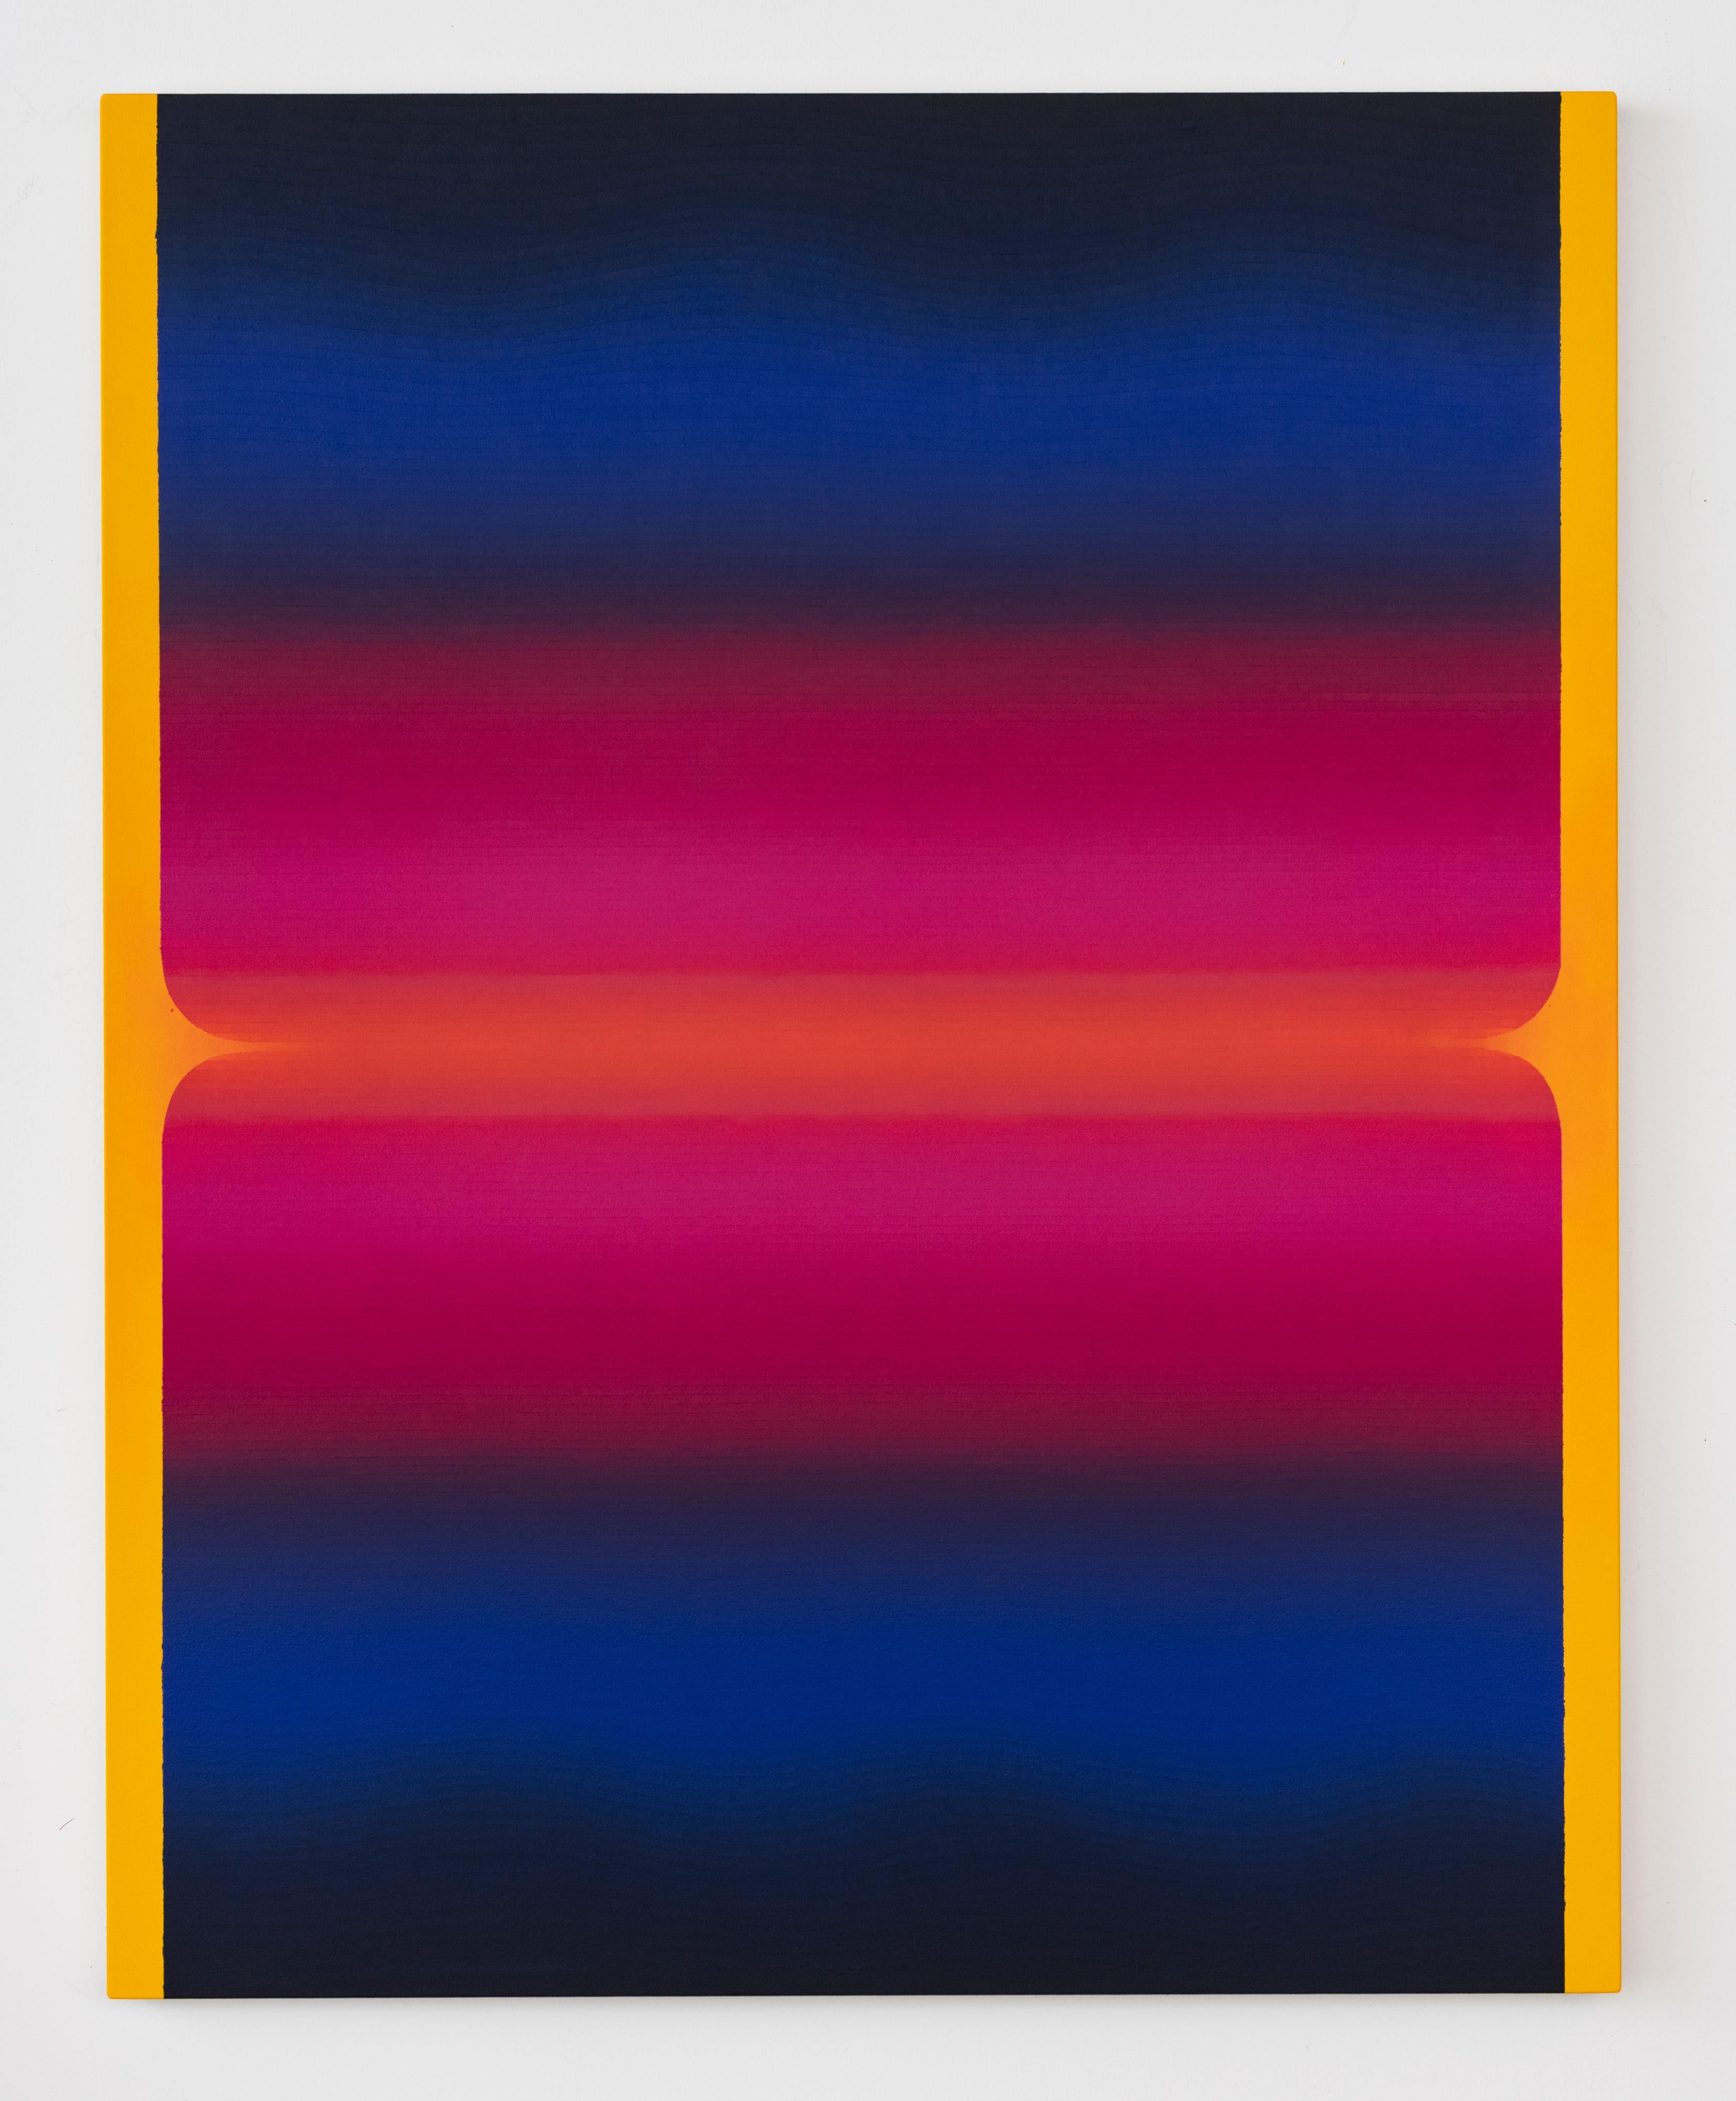 Audrey Stone Abstract Painting – Rome Sieben, Goldgelb, Marineblau, Indigo, Heißrosa, Orange Farbverlaufstreifen